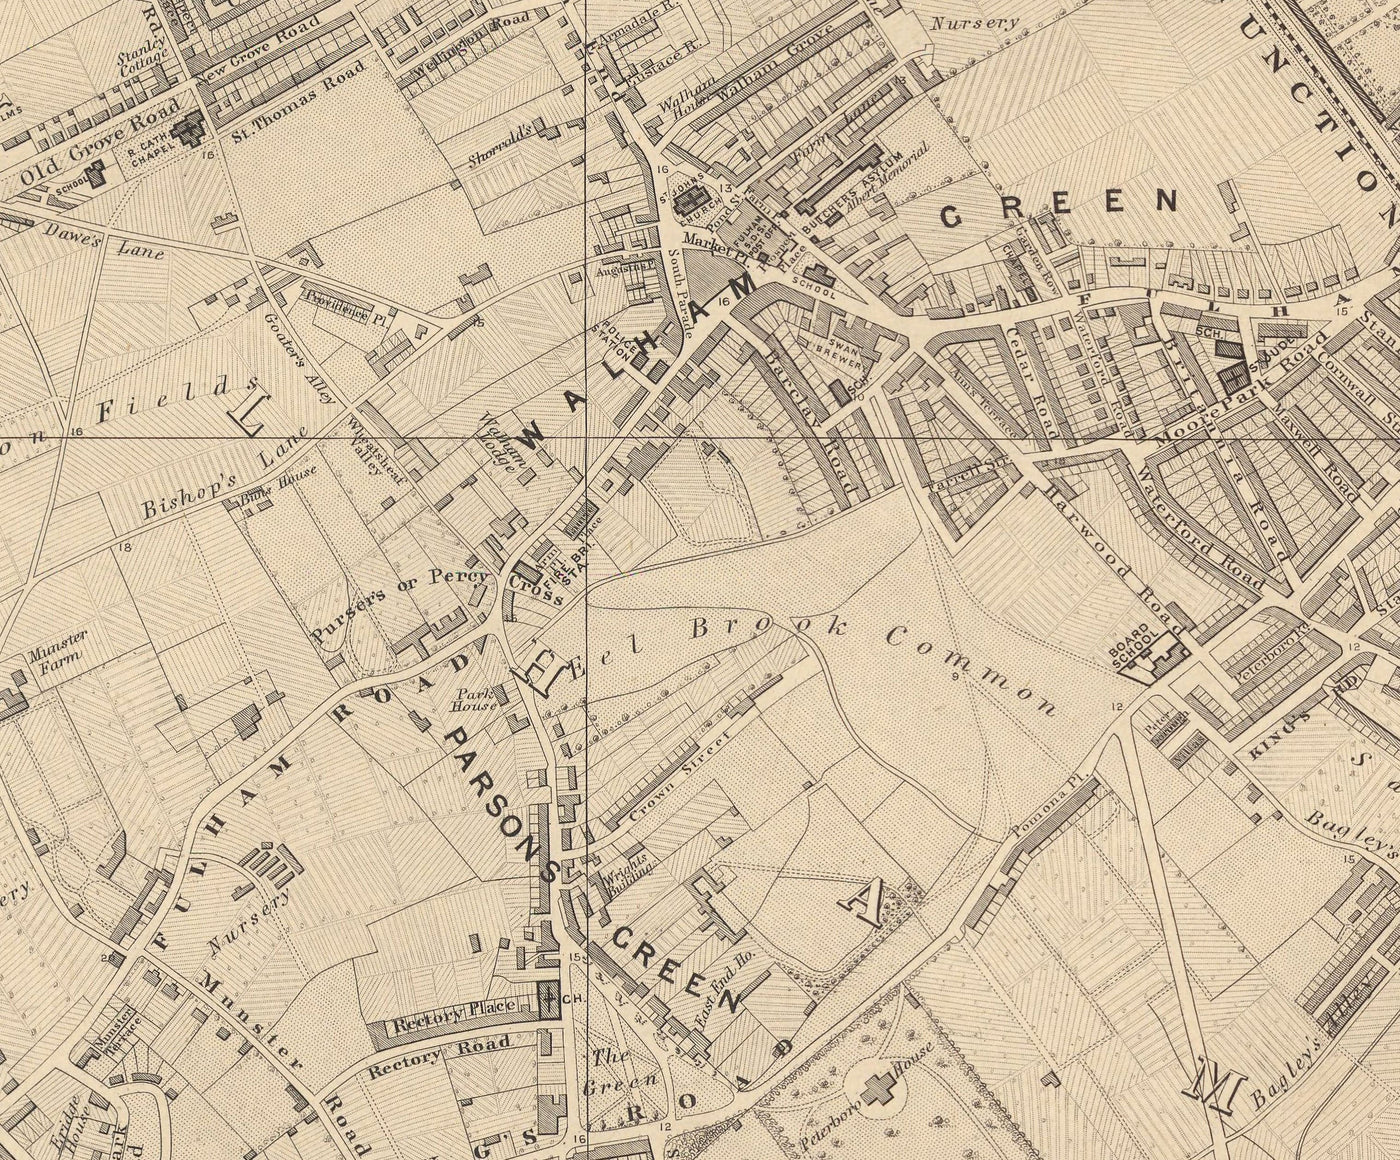 Ancienne carte de West London en 1862 par Edward Stanford - Fulham, Brompton, Battersea, Hammersmith - SW6, SW10, SW15, SW18, SW10, SW11, SW5, W6, W14